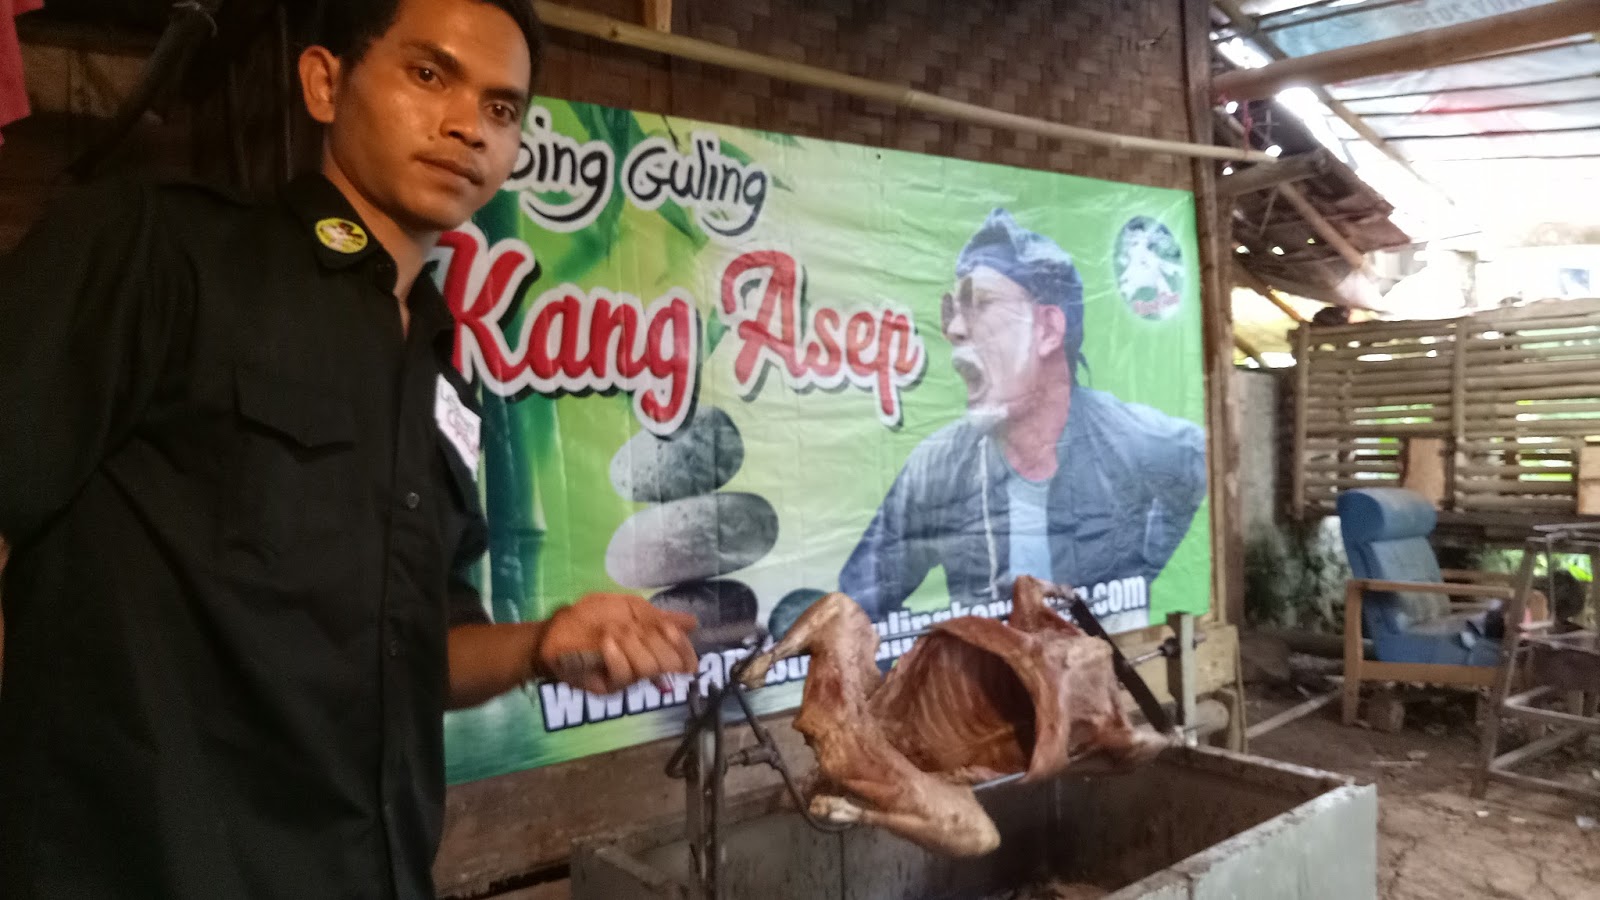 Kambing Guling Murah Berkualitas di Lembang | Hubungi: 082216503666 - Kambing Guling Kang Asep